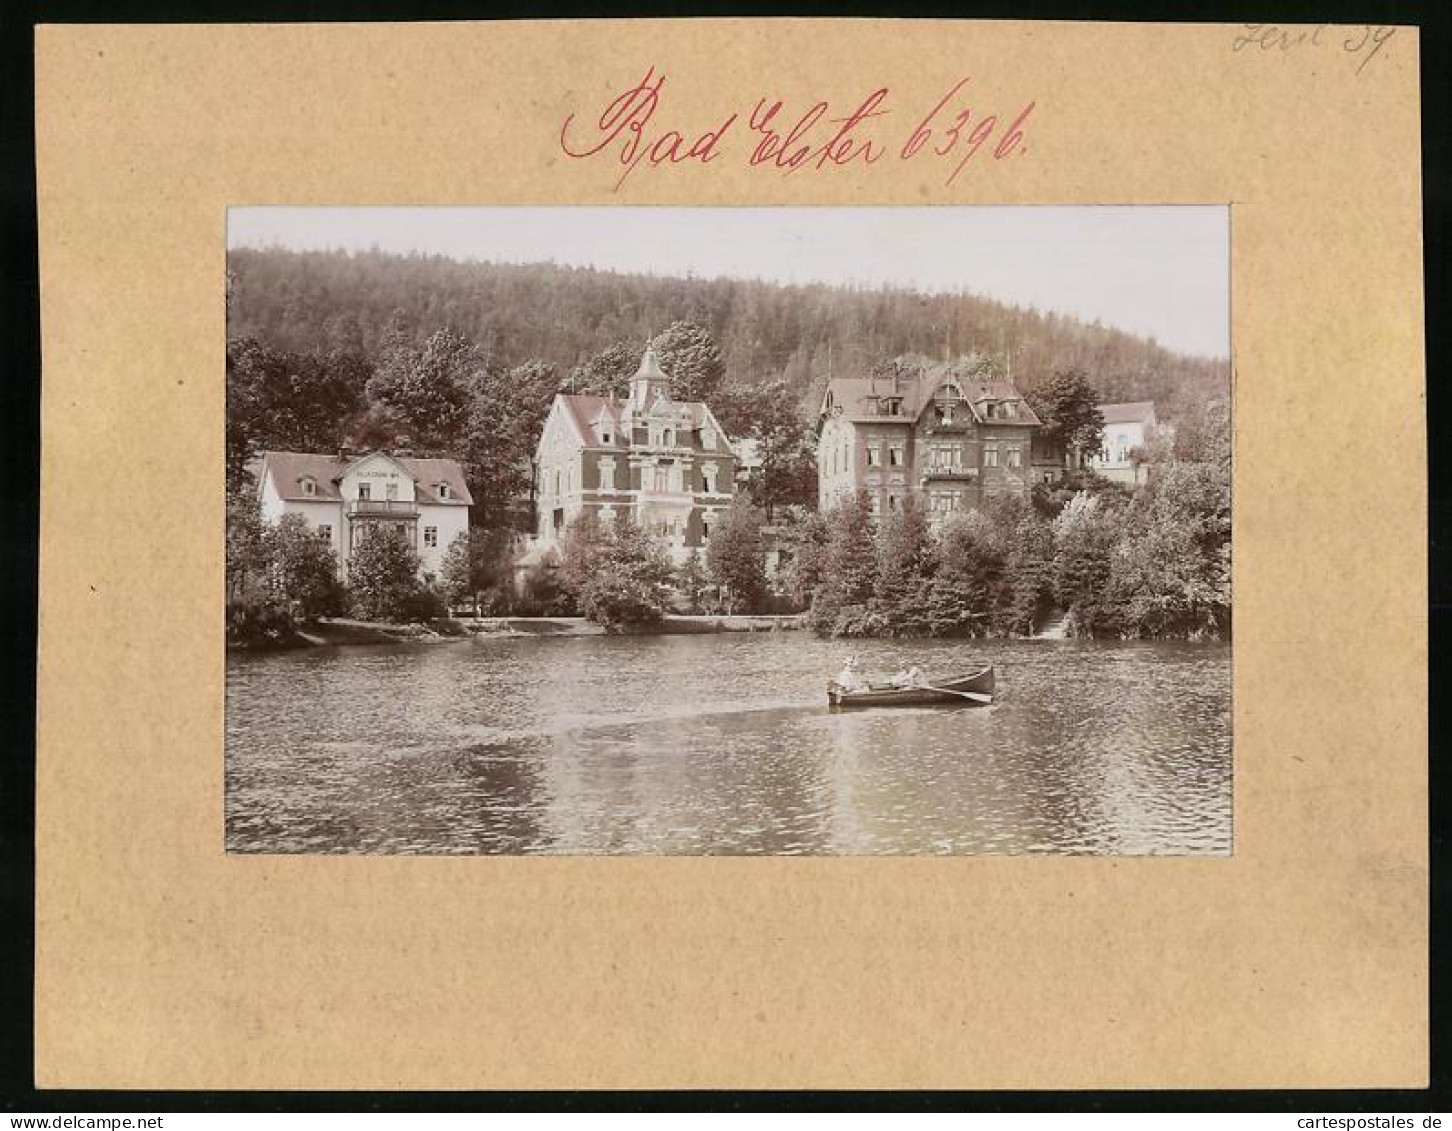 Fotografie Brück & Sohn Meissen, Ansicht Bad Elster, Partie Luisasee Mit Villa Gr. Aue, Villa Abbazia, Schloss Miramar  - Orte